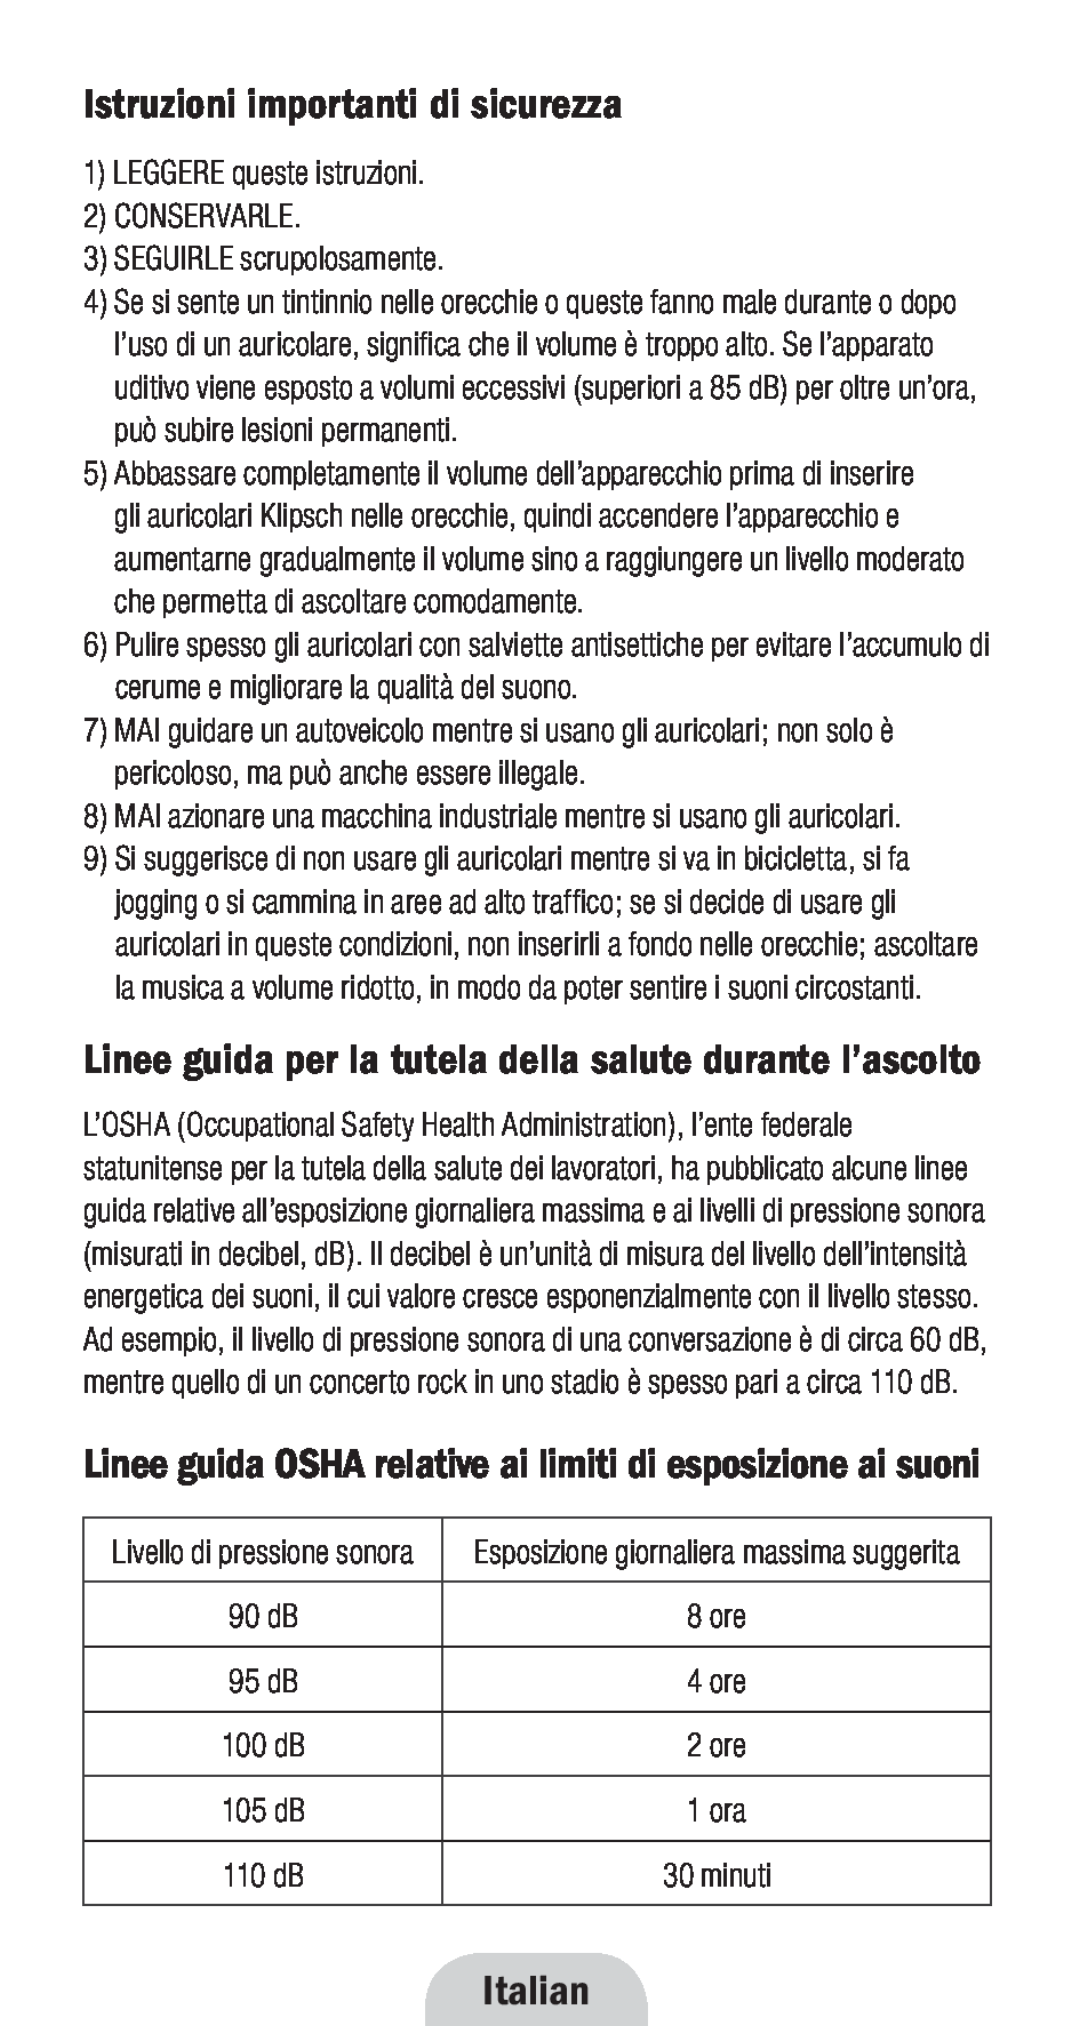 Klipsch 1010950 Istruzioni importanti di sicurezza, Italian, Linee guida per la tutela della salute durante l’ascolto 